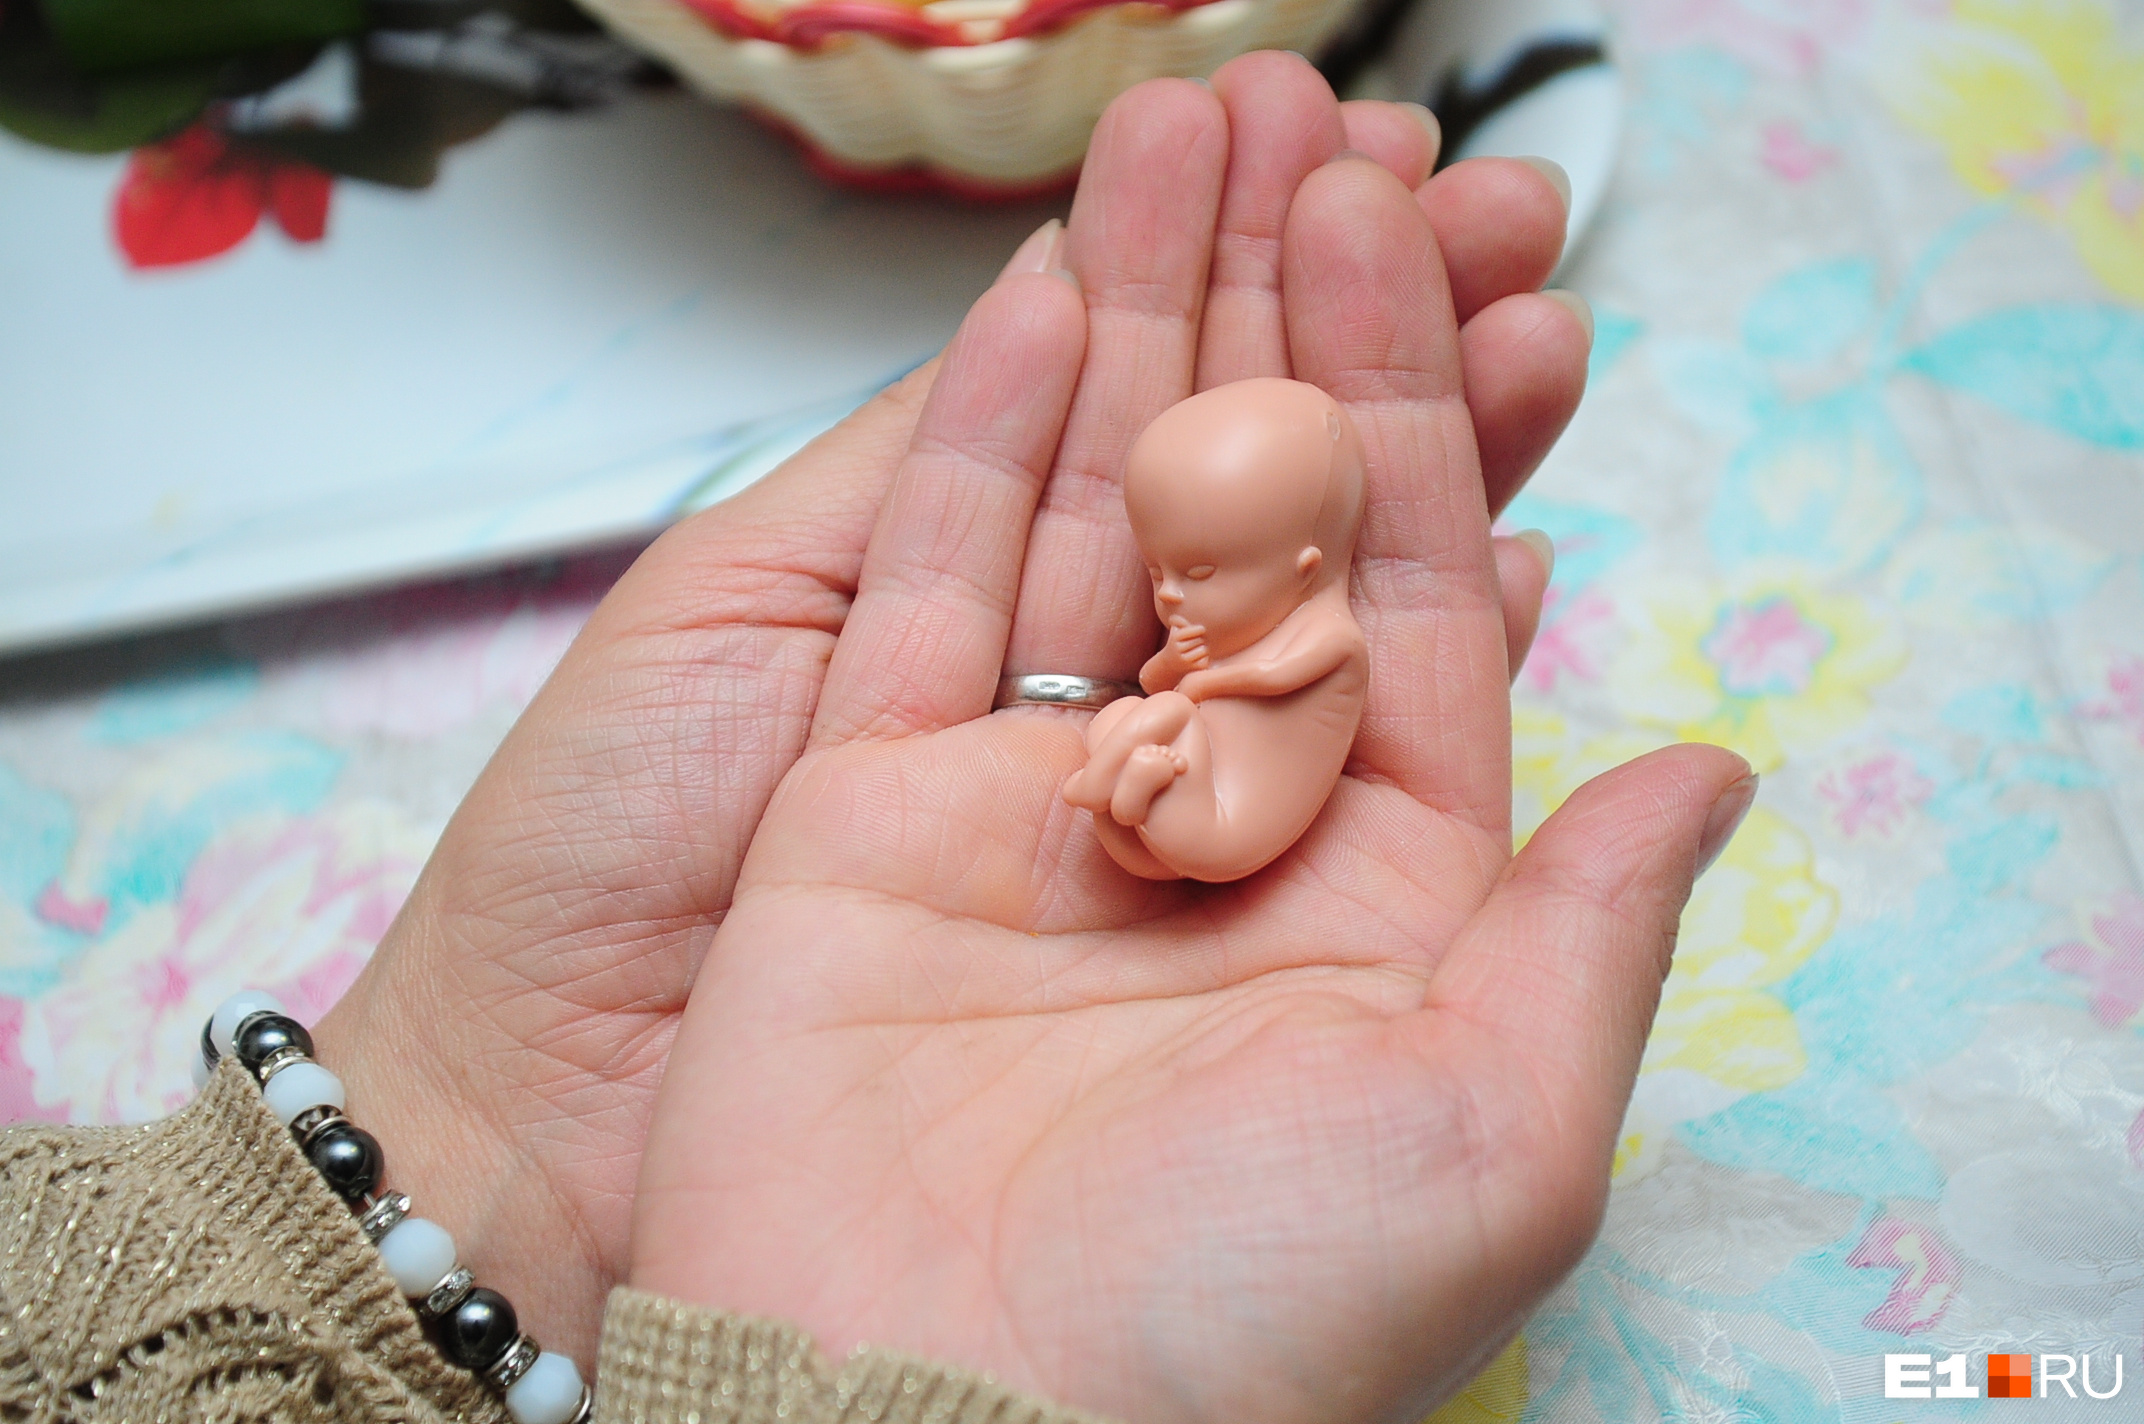 Закон о запрете склонения к абортам в Забайкалье предложили принять во втором чтении